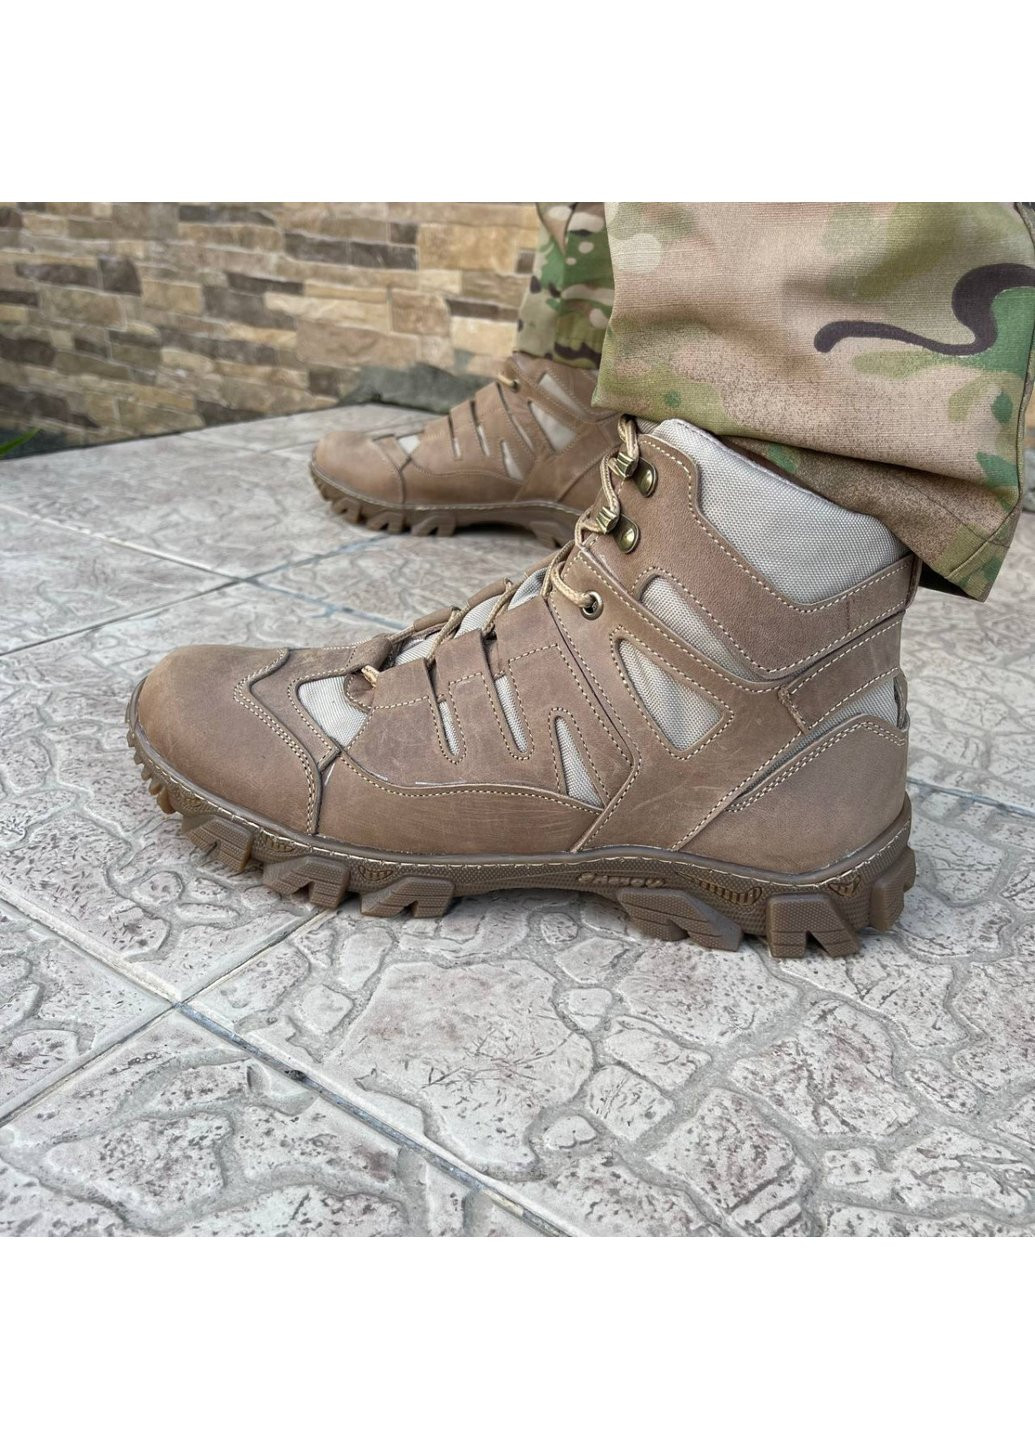 Коричневые осенние ботинки военные тактические всу (зсу) 7529 44 р 29 см коричневые Power